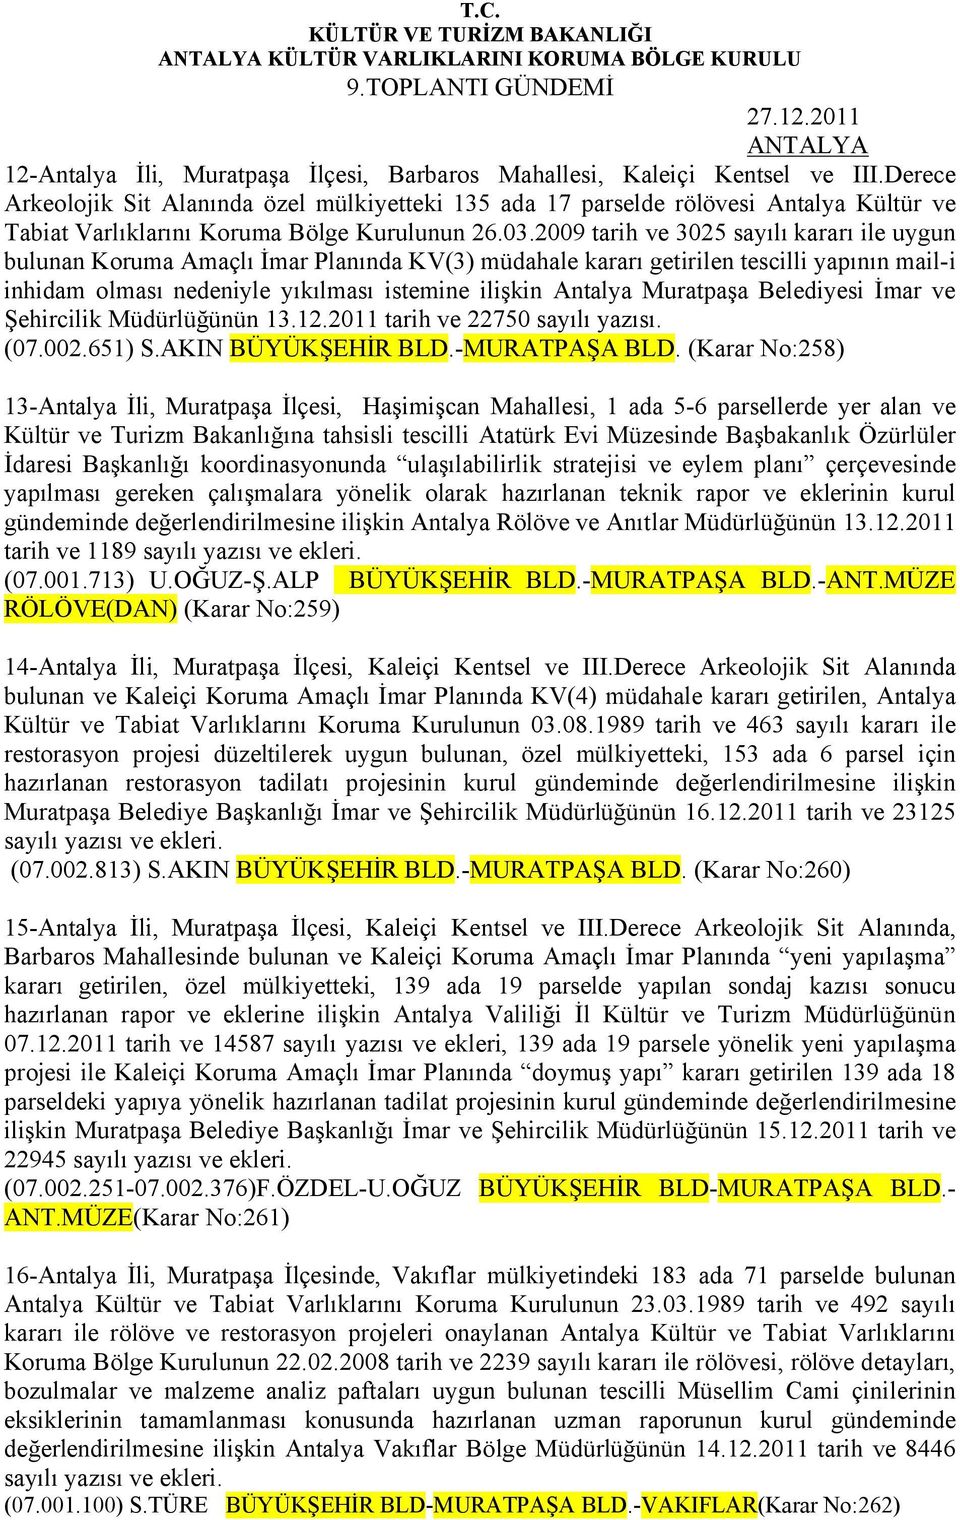 2009 tarih ve 3025 sayılı kararı ile uygun bulunan Koruma Amaçlı İmar Planında KV(3) müdahale kararı getirilen tescilli yapının mail-i inhidam olması nedeniyle yıkılması istemine ilişkin Antalya